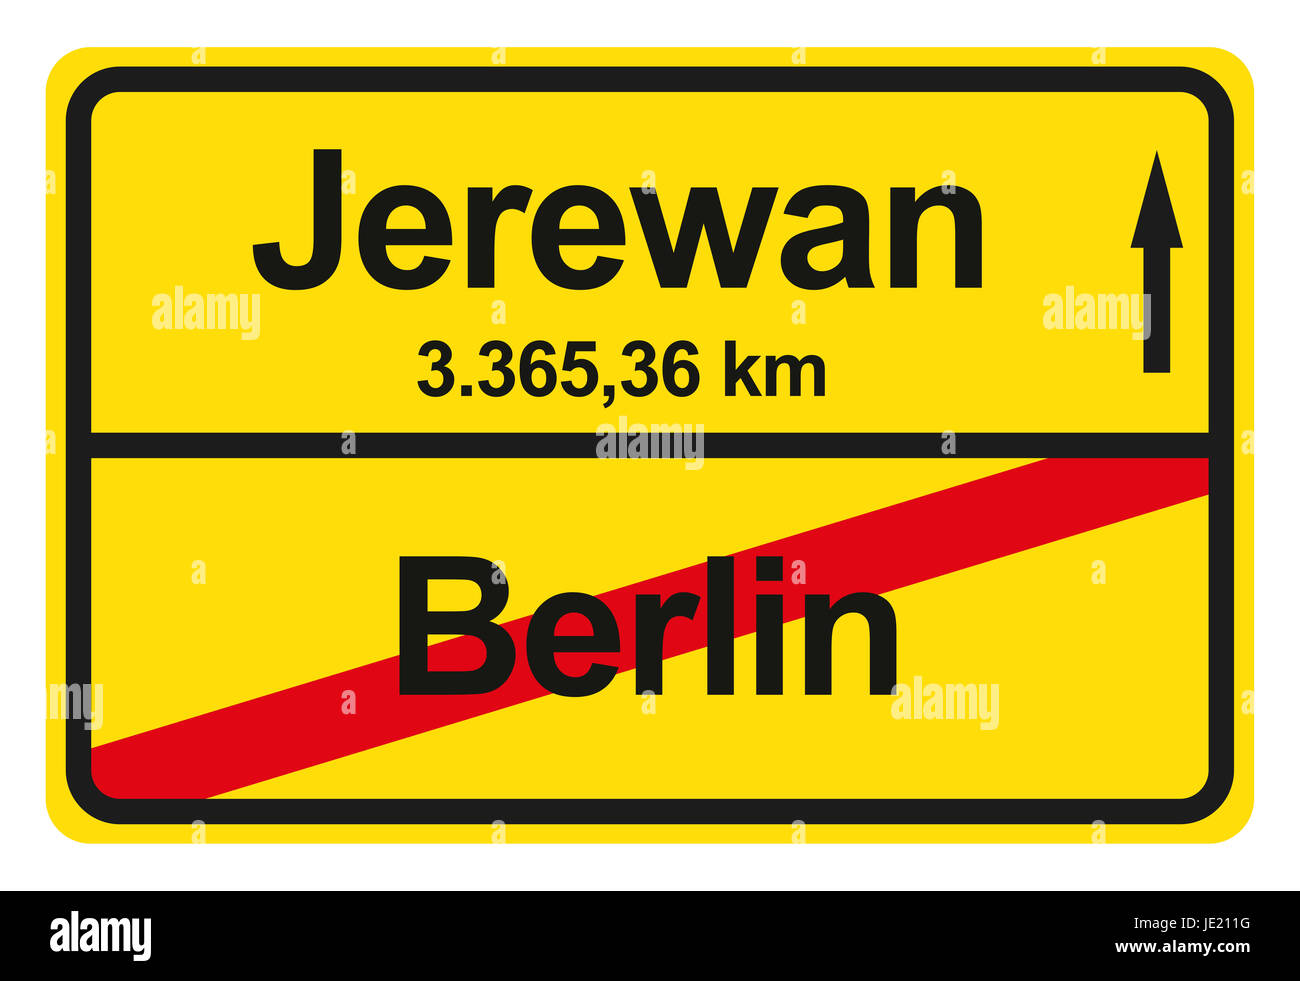 Ein gelbes Ortsausgangschild mit der jeweiligen Entfernung von einem Ort zum anderen. Stock Photo